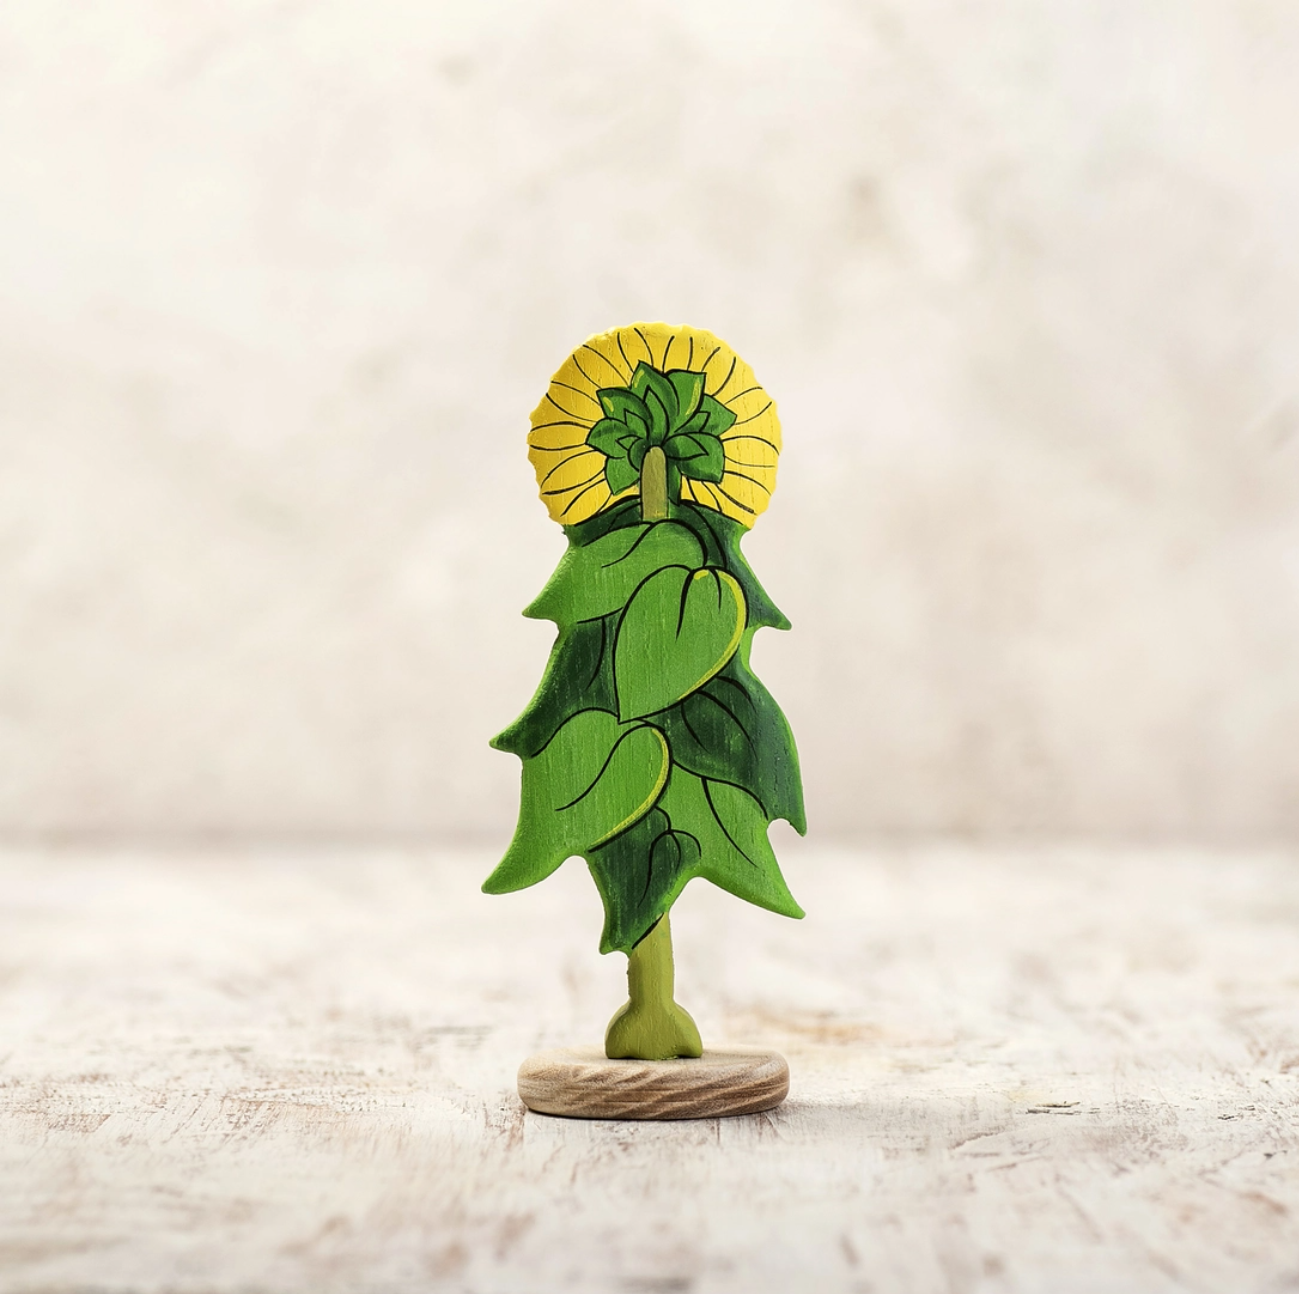 Wooden Caterpillar Sunflower Toy Figure